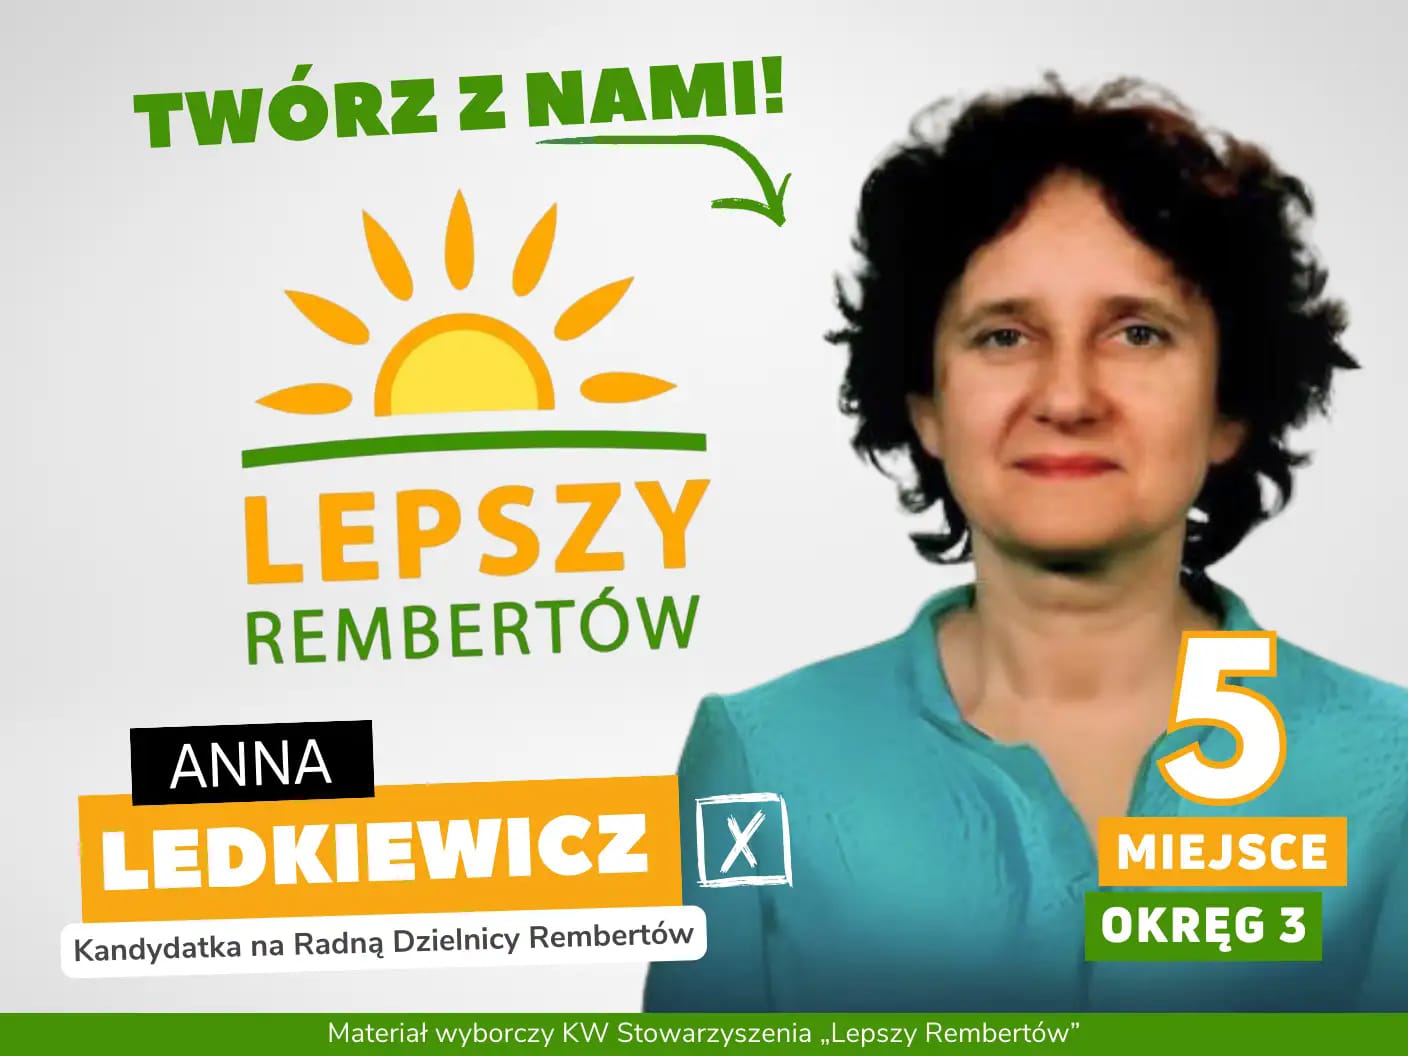 Anna Ledkiewicz Okręg 3 miejsce 5